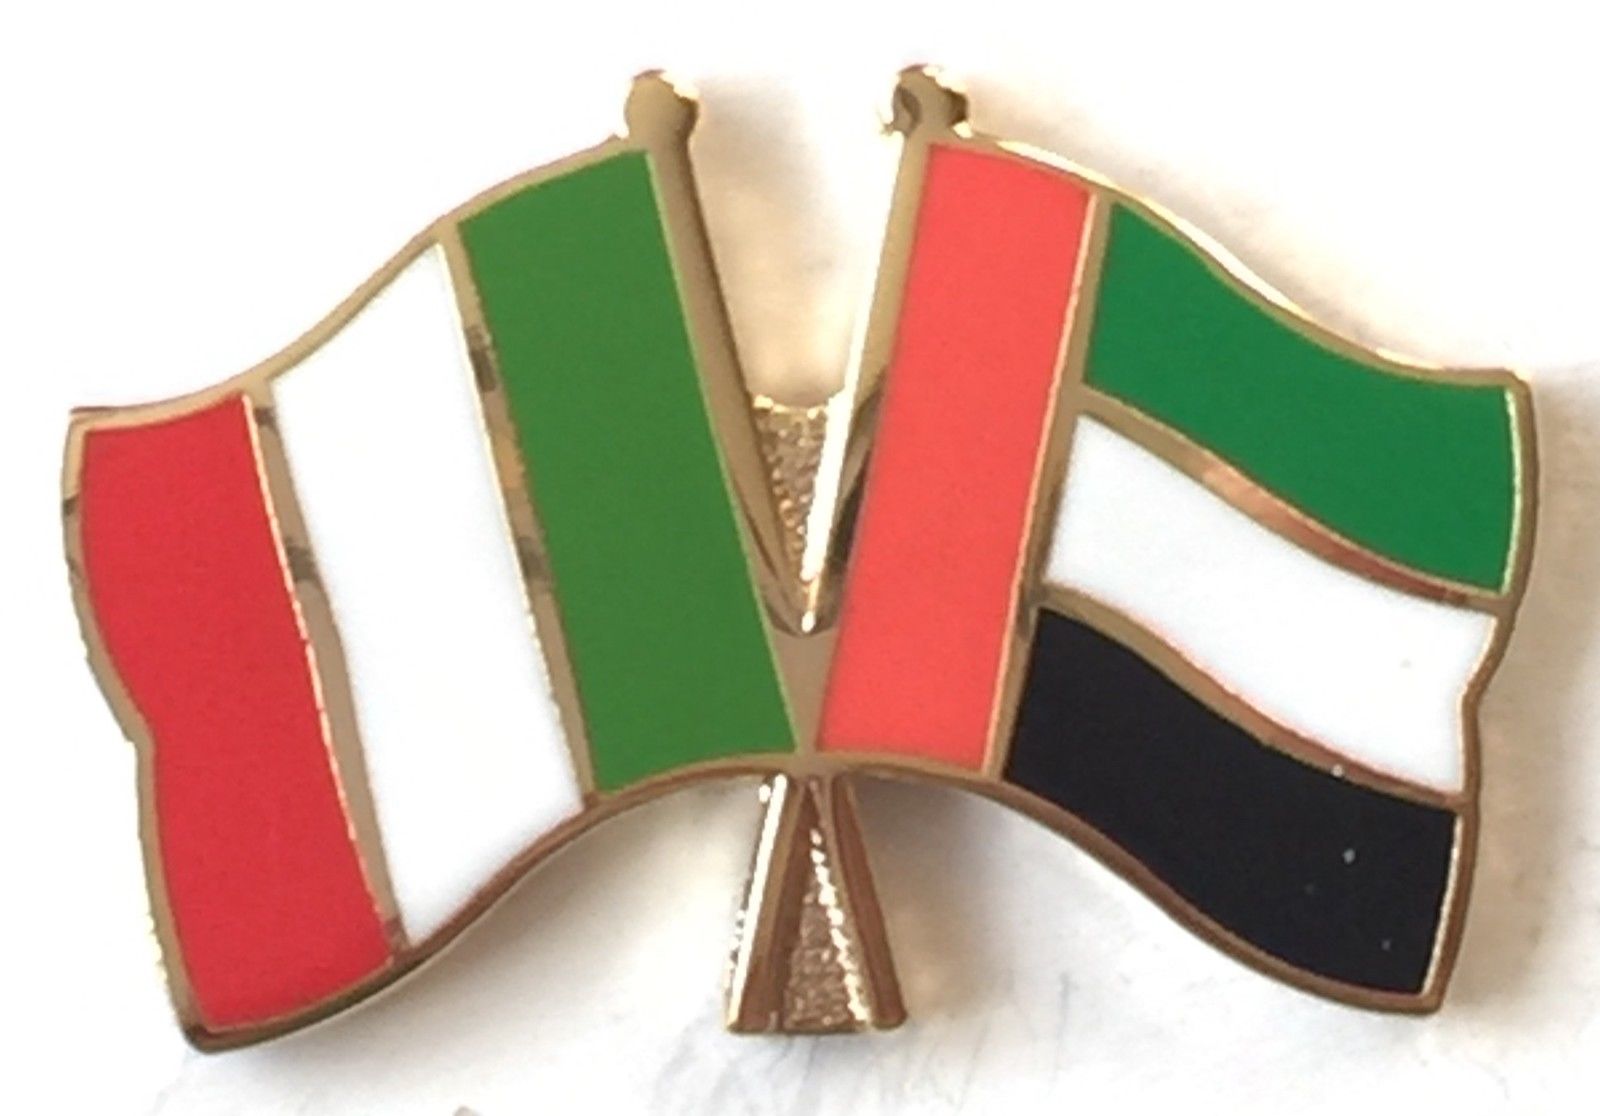 Italian firms seek potential growth in UAE